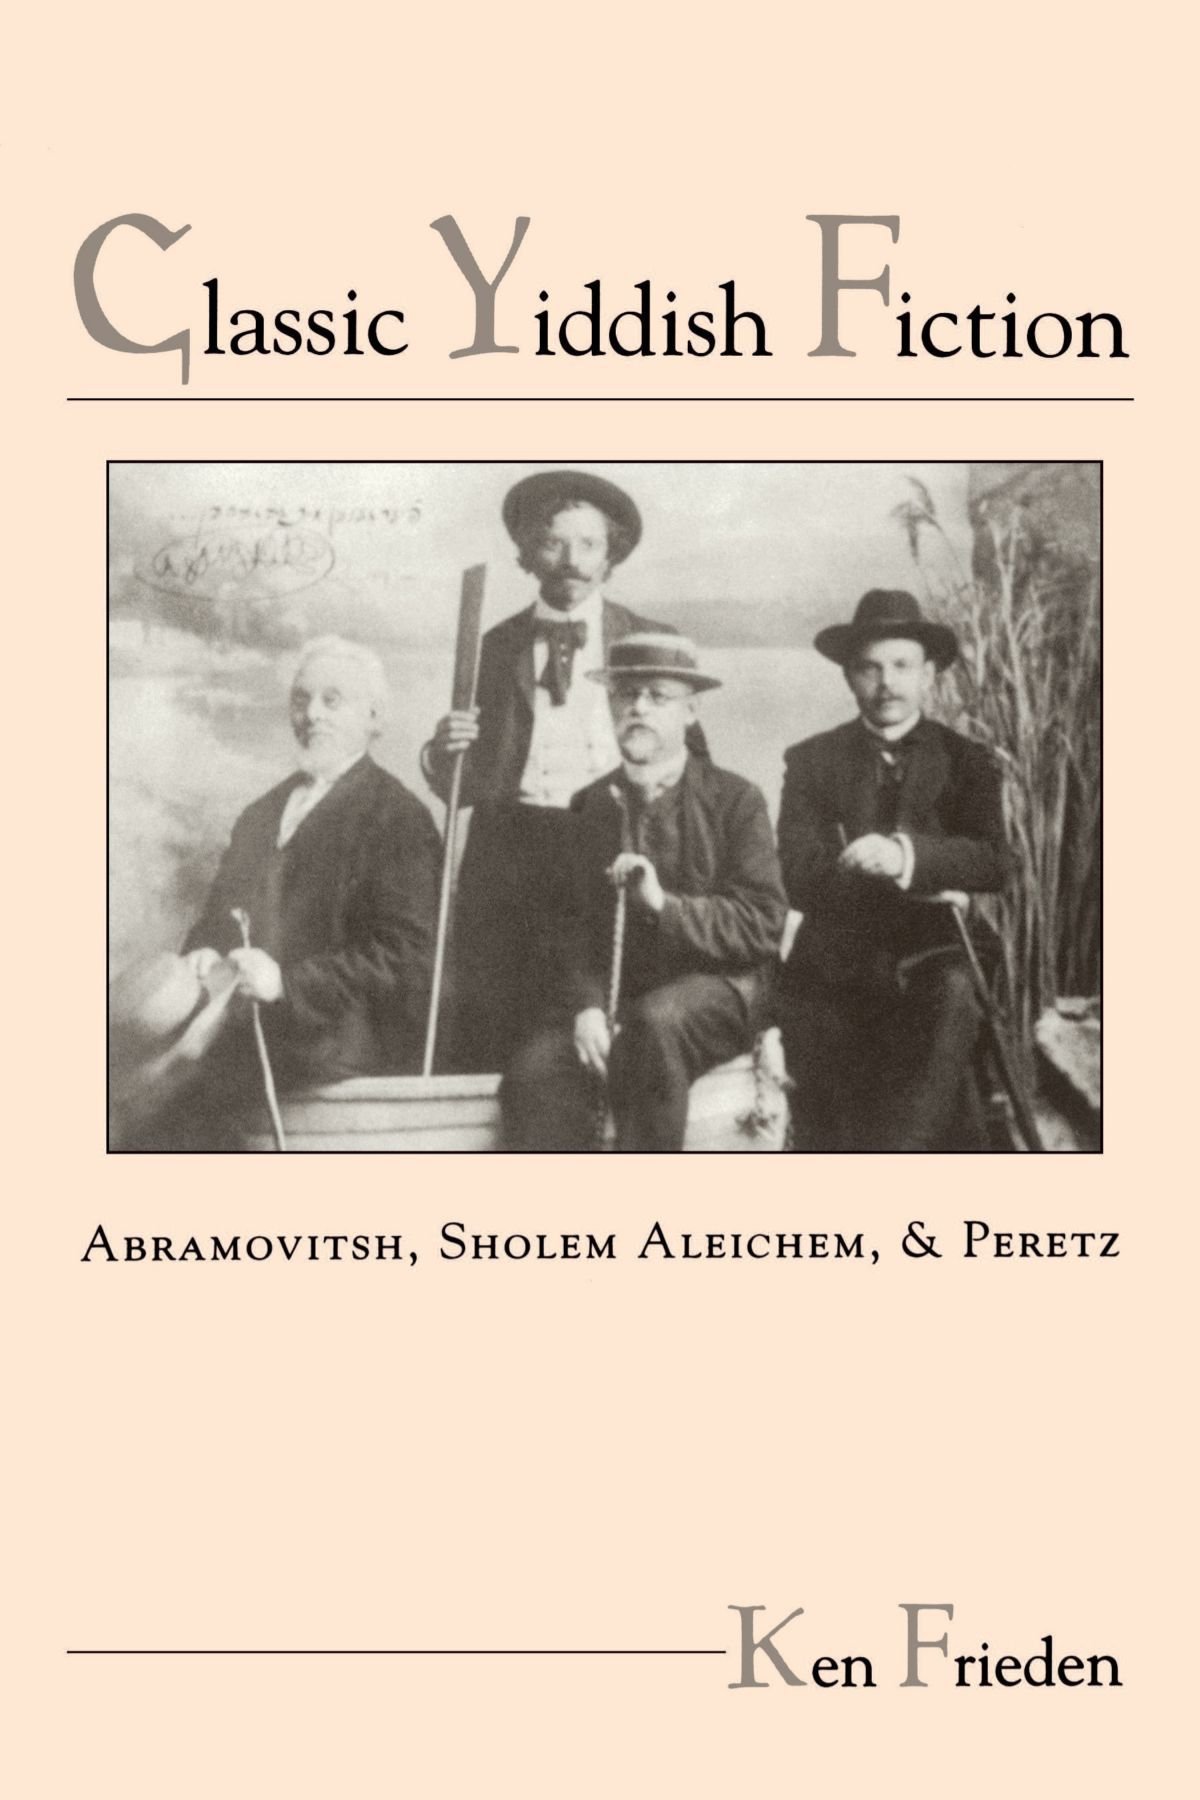 Classic Yiddish Fiction Abramovitsh, Sholem Aleichem, and Peretz